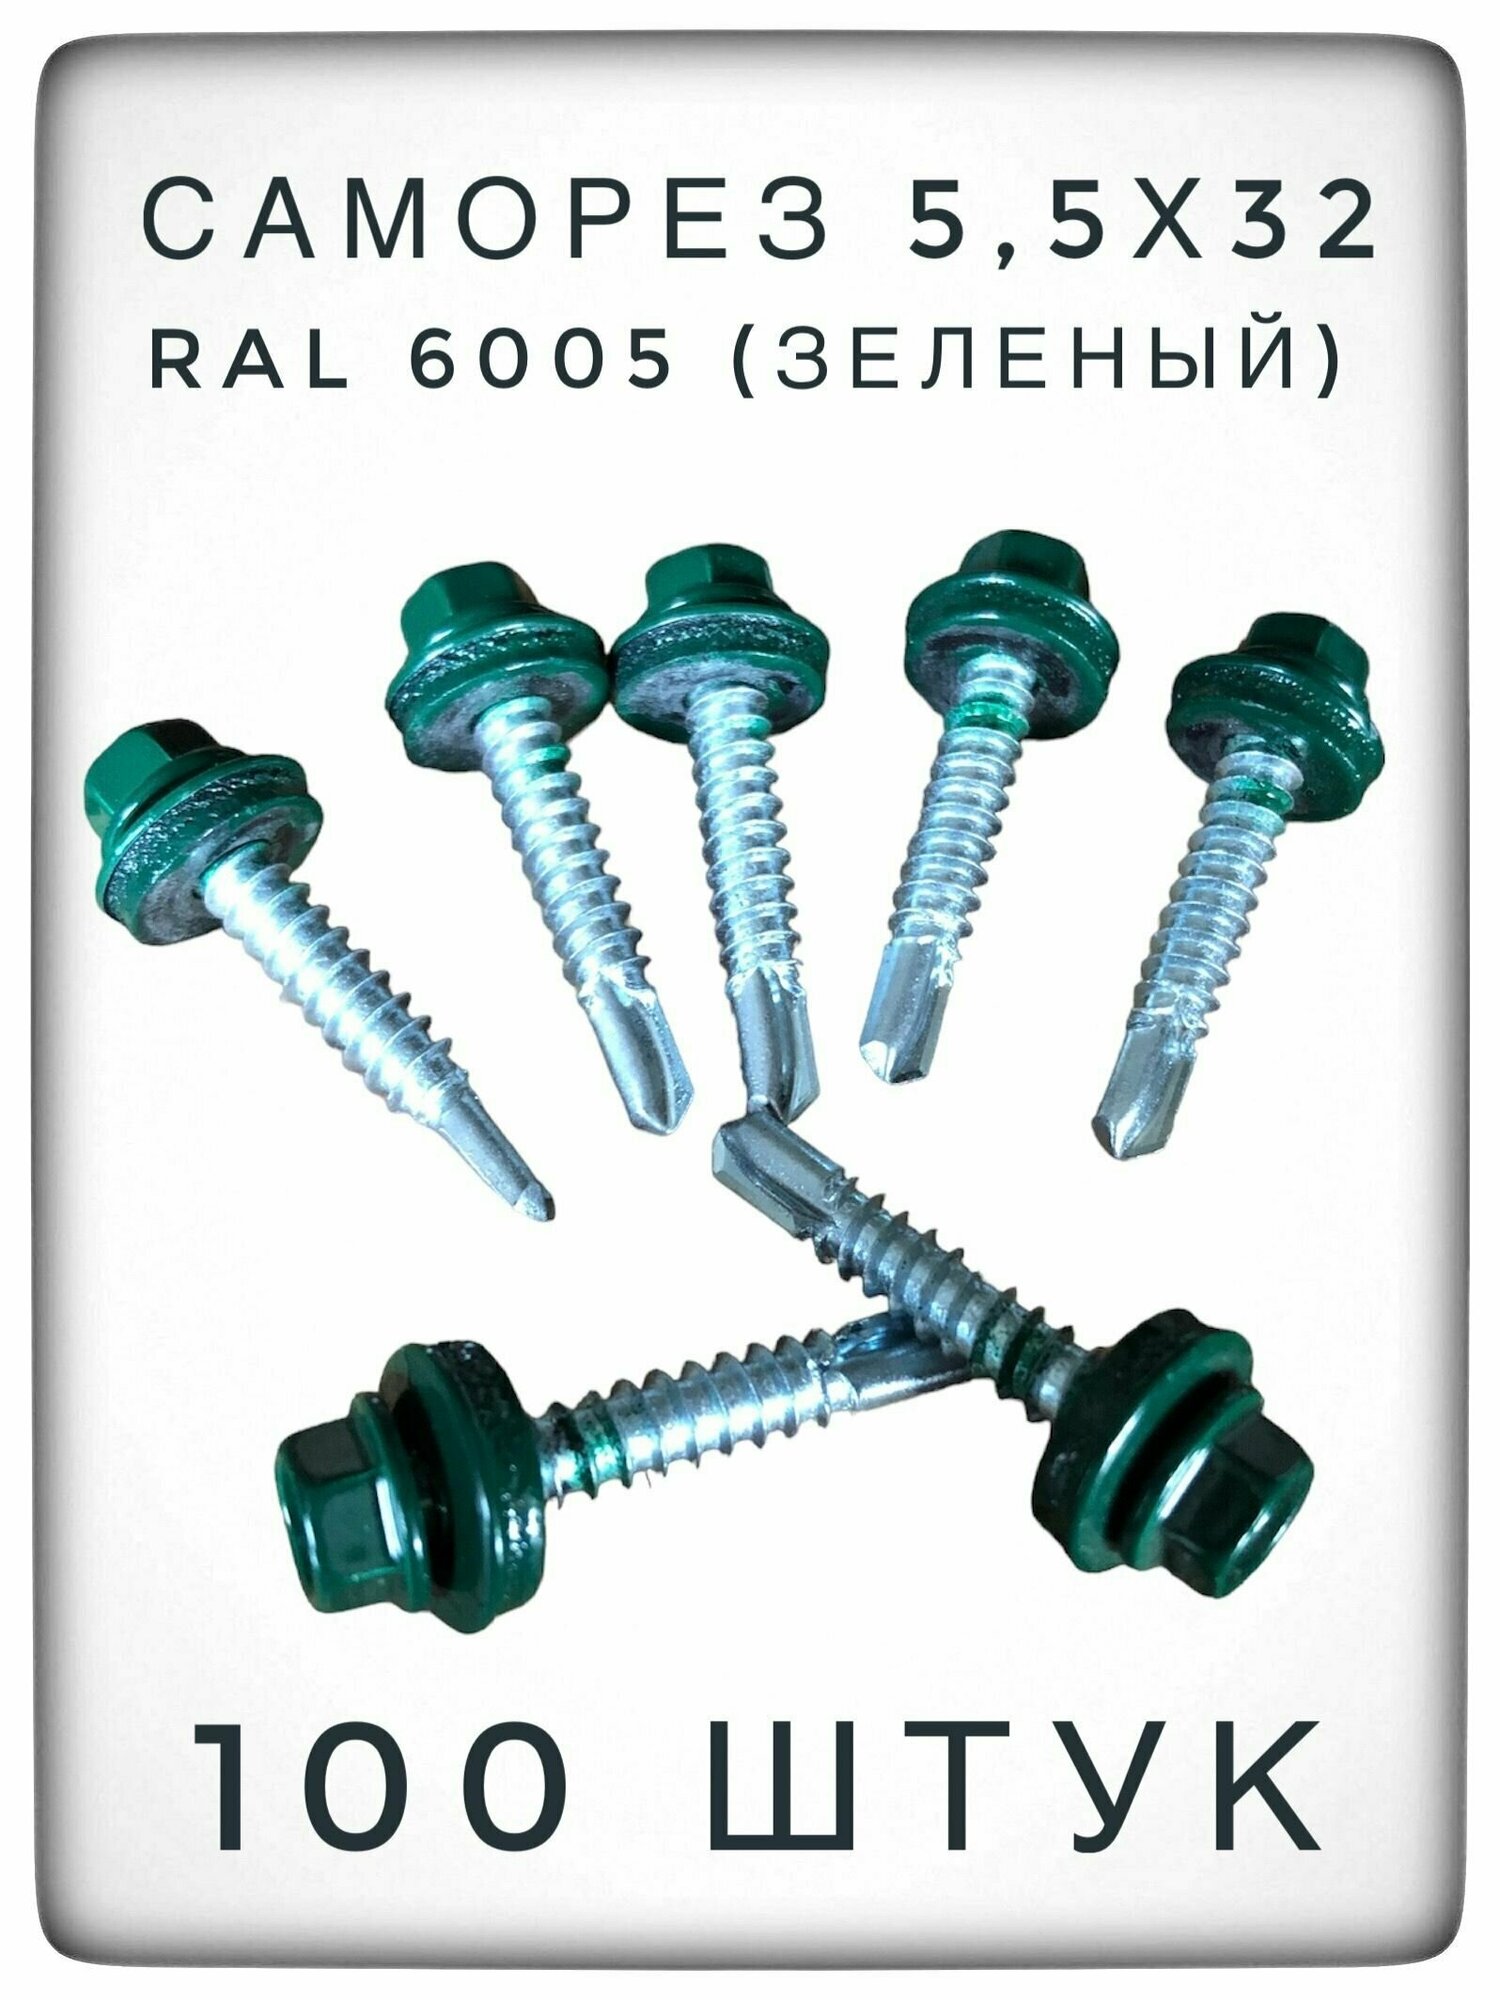 Саморез 55х32 RAL6005 (зеленый) 100 штук